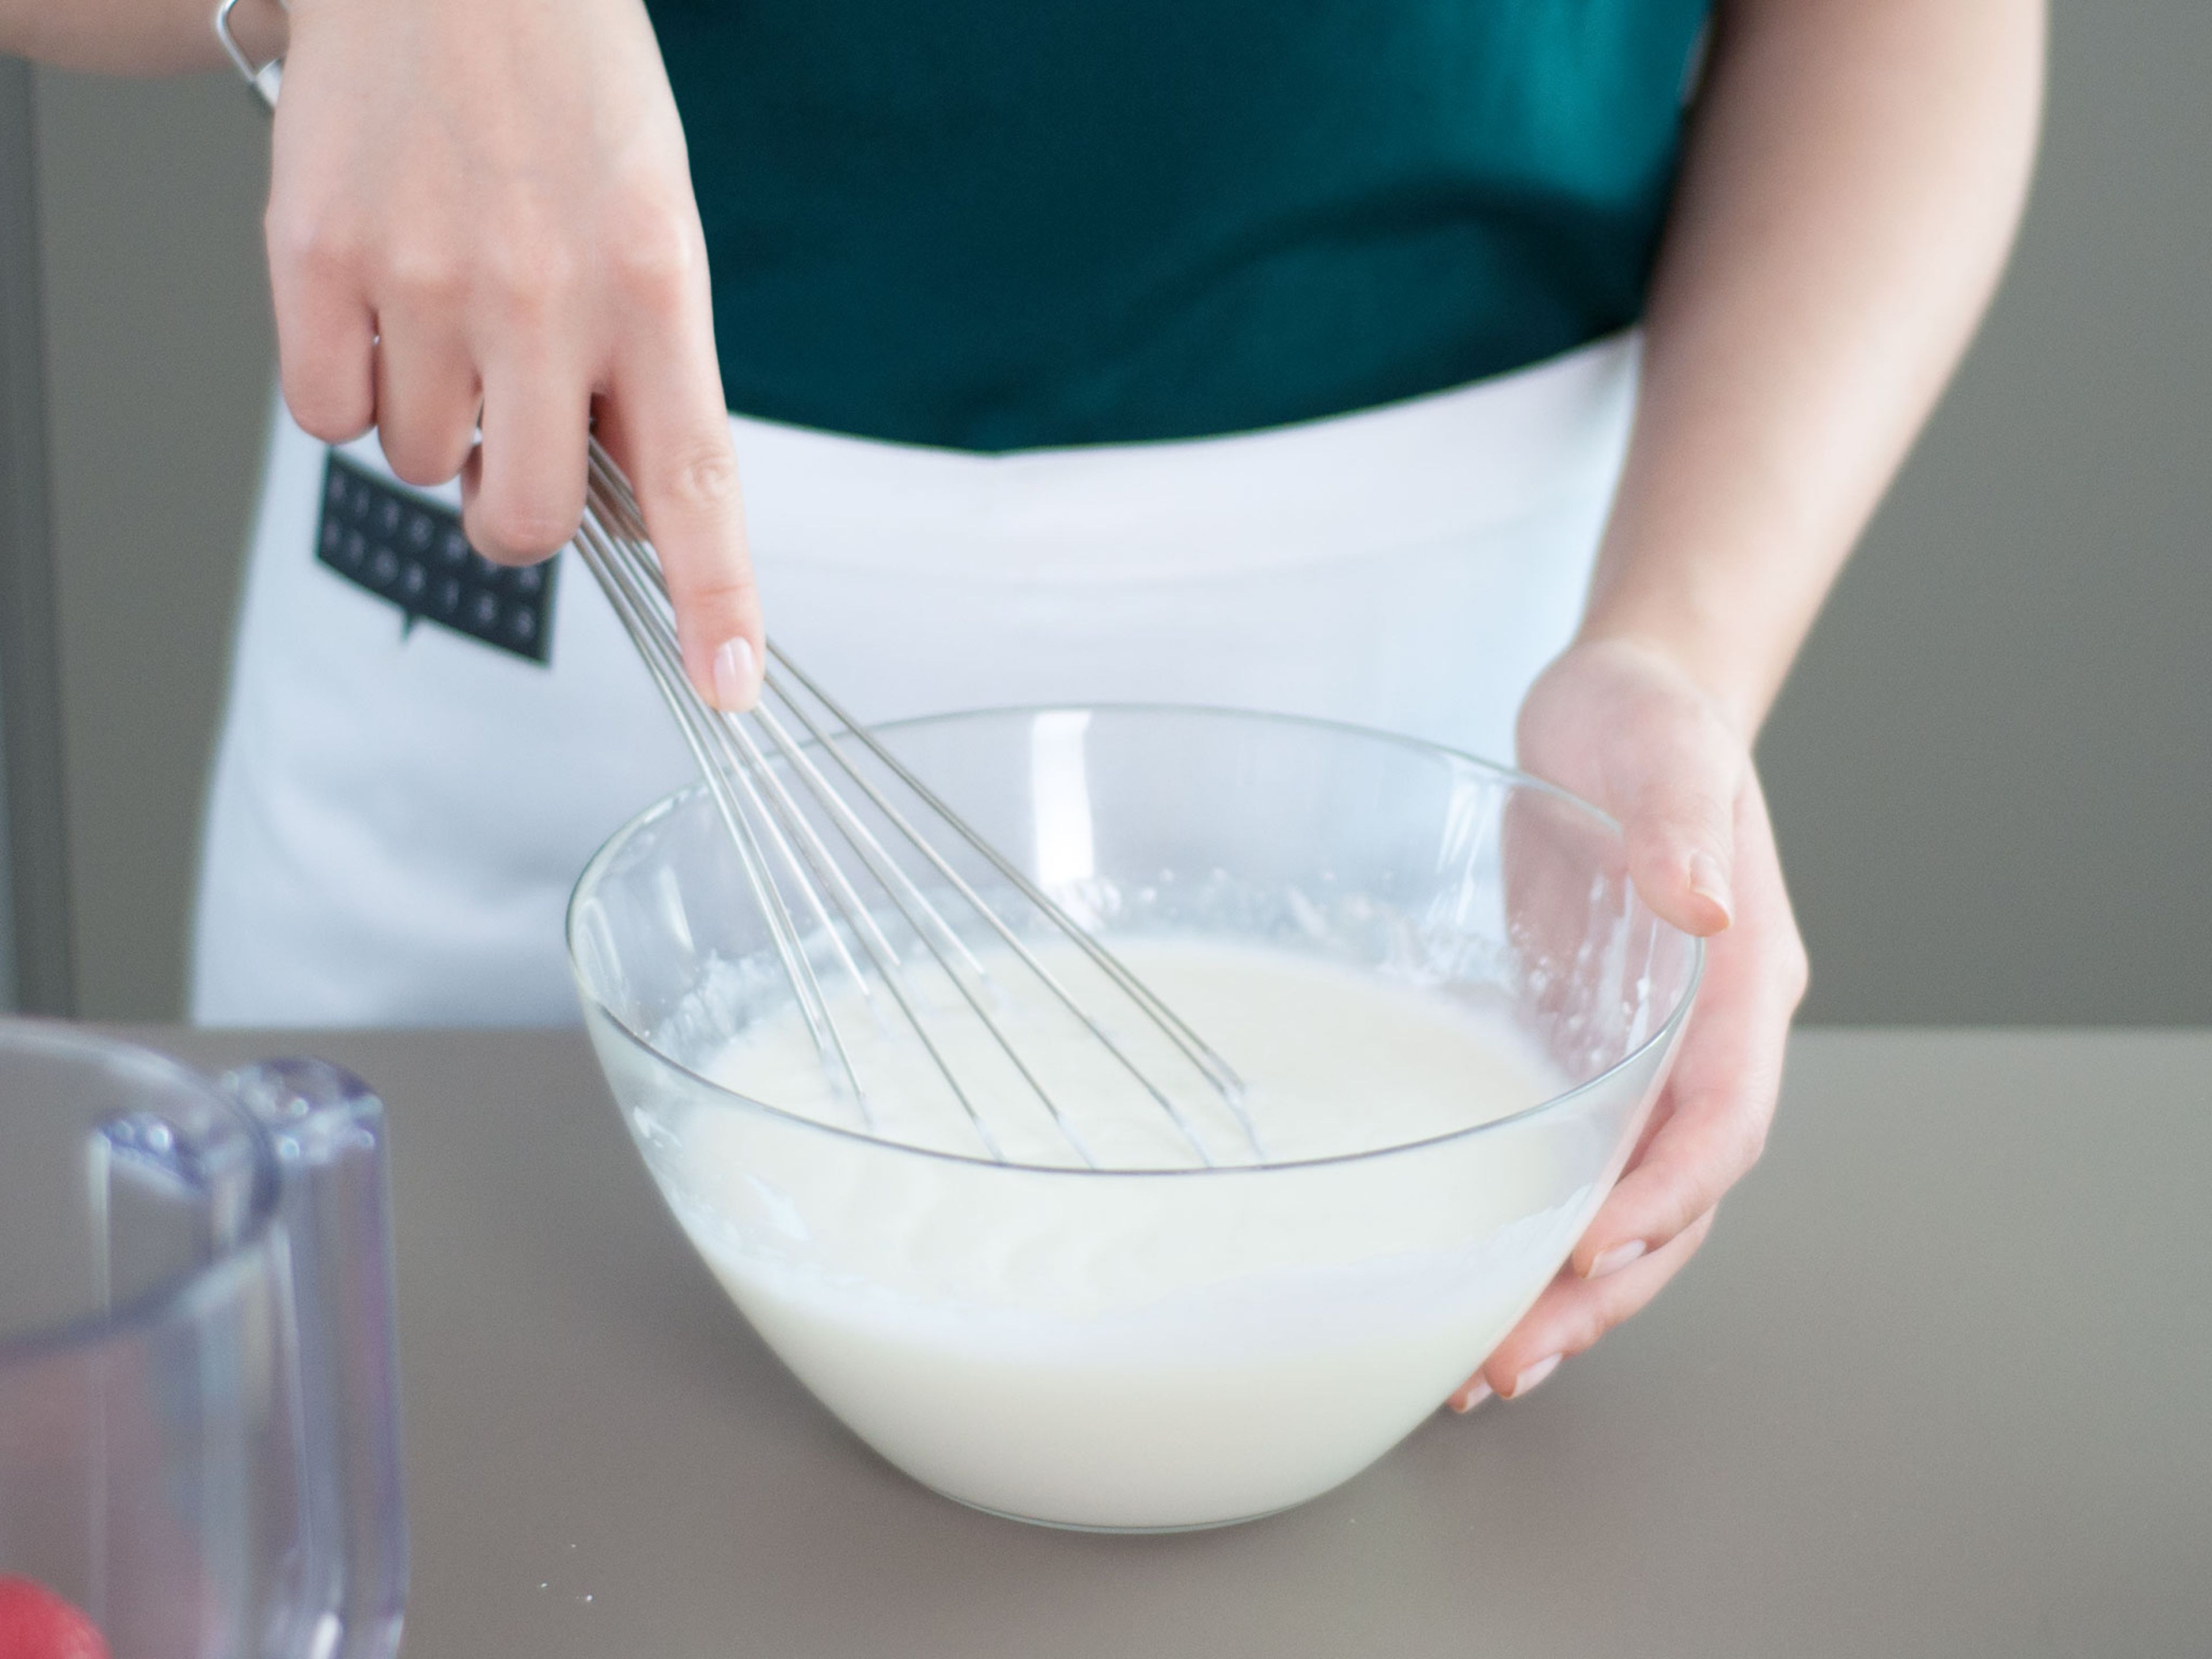 Joghurt, Puderzucker und Zitronensaft in einer großen Schüssel vermengen. 1 - 2 EL der Joghurtmischung gleichmäßig in die Förmchen füllen.